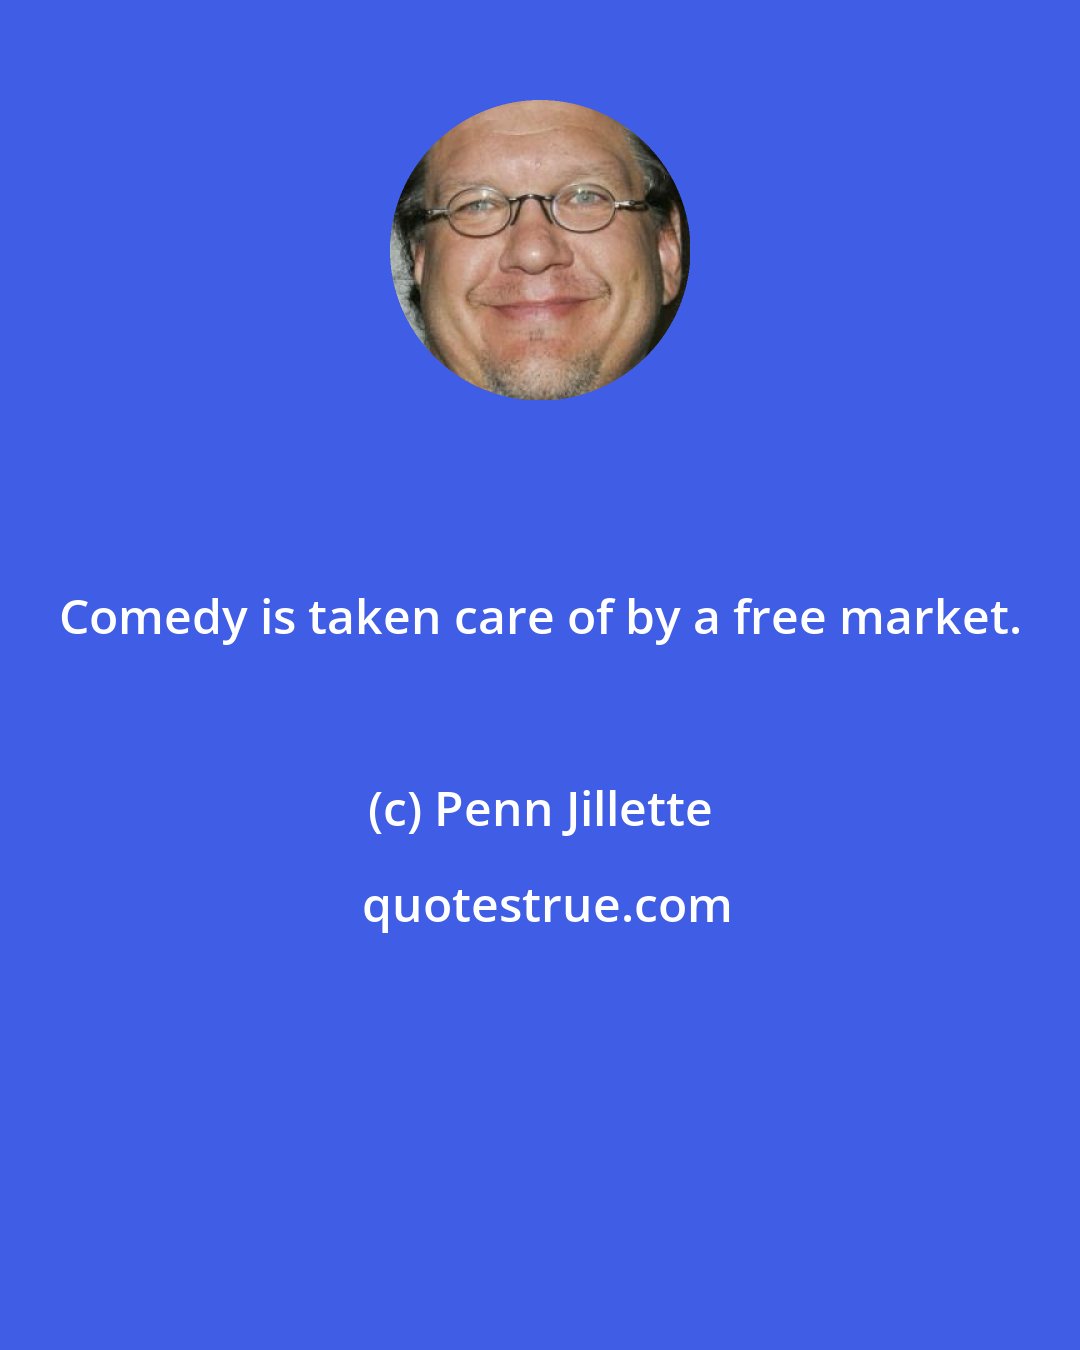 Penn Jillette: Comedy is taken care of by a free market.